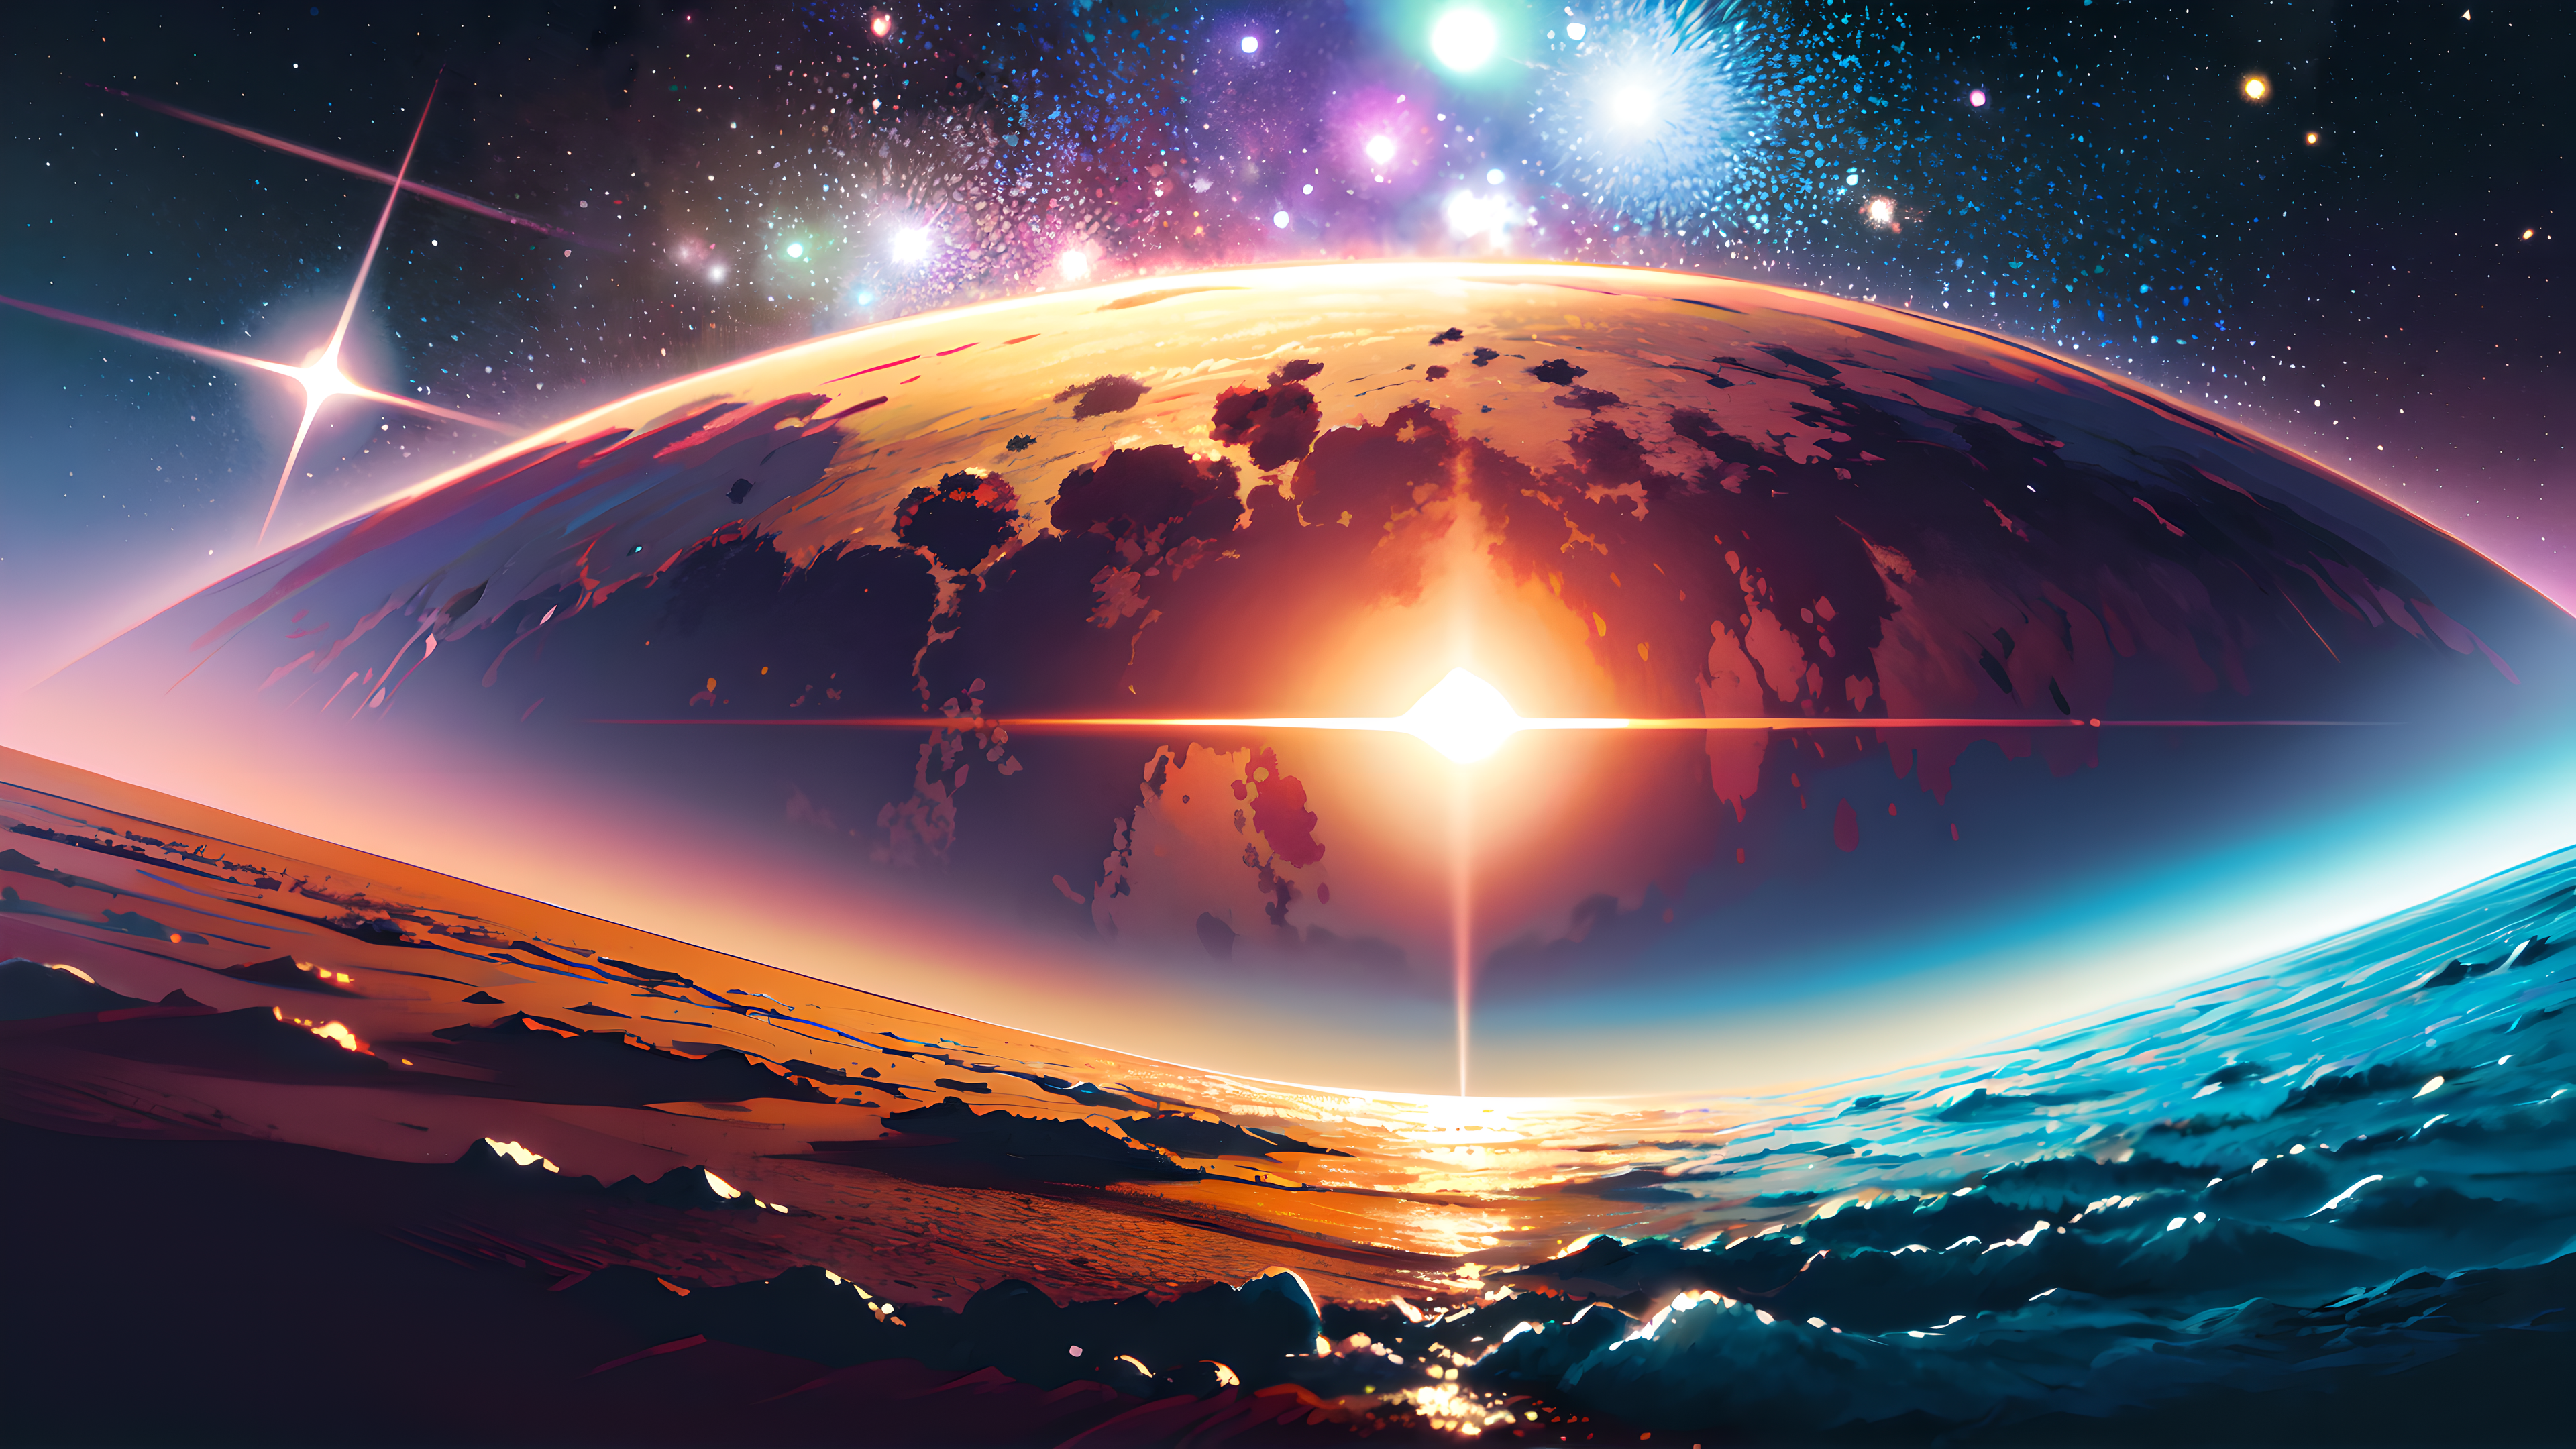 Wallpaper iphone cyberpunk planet cosmos by bekreatifdesign on DeviantArt